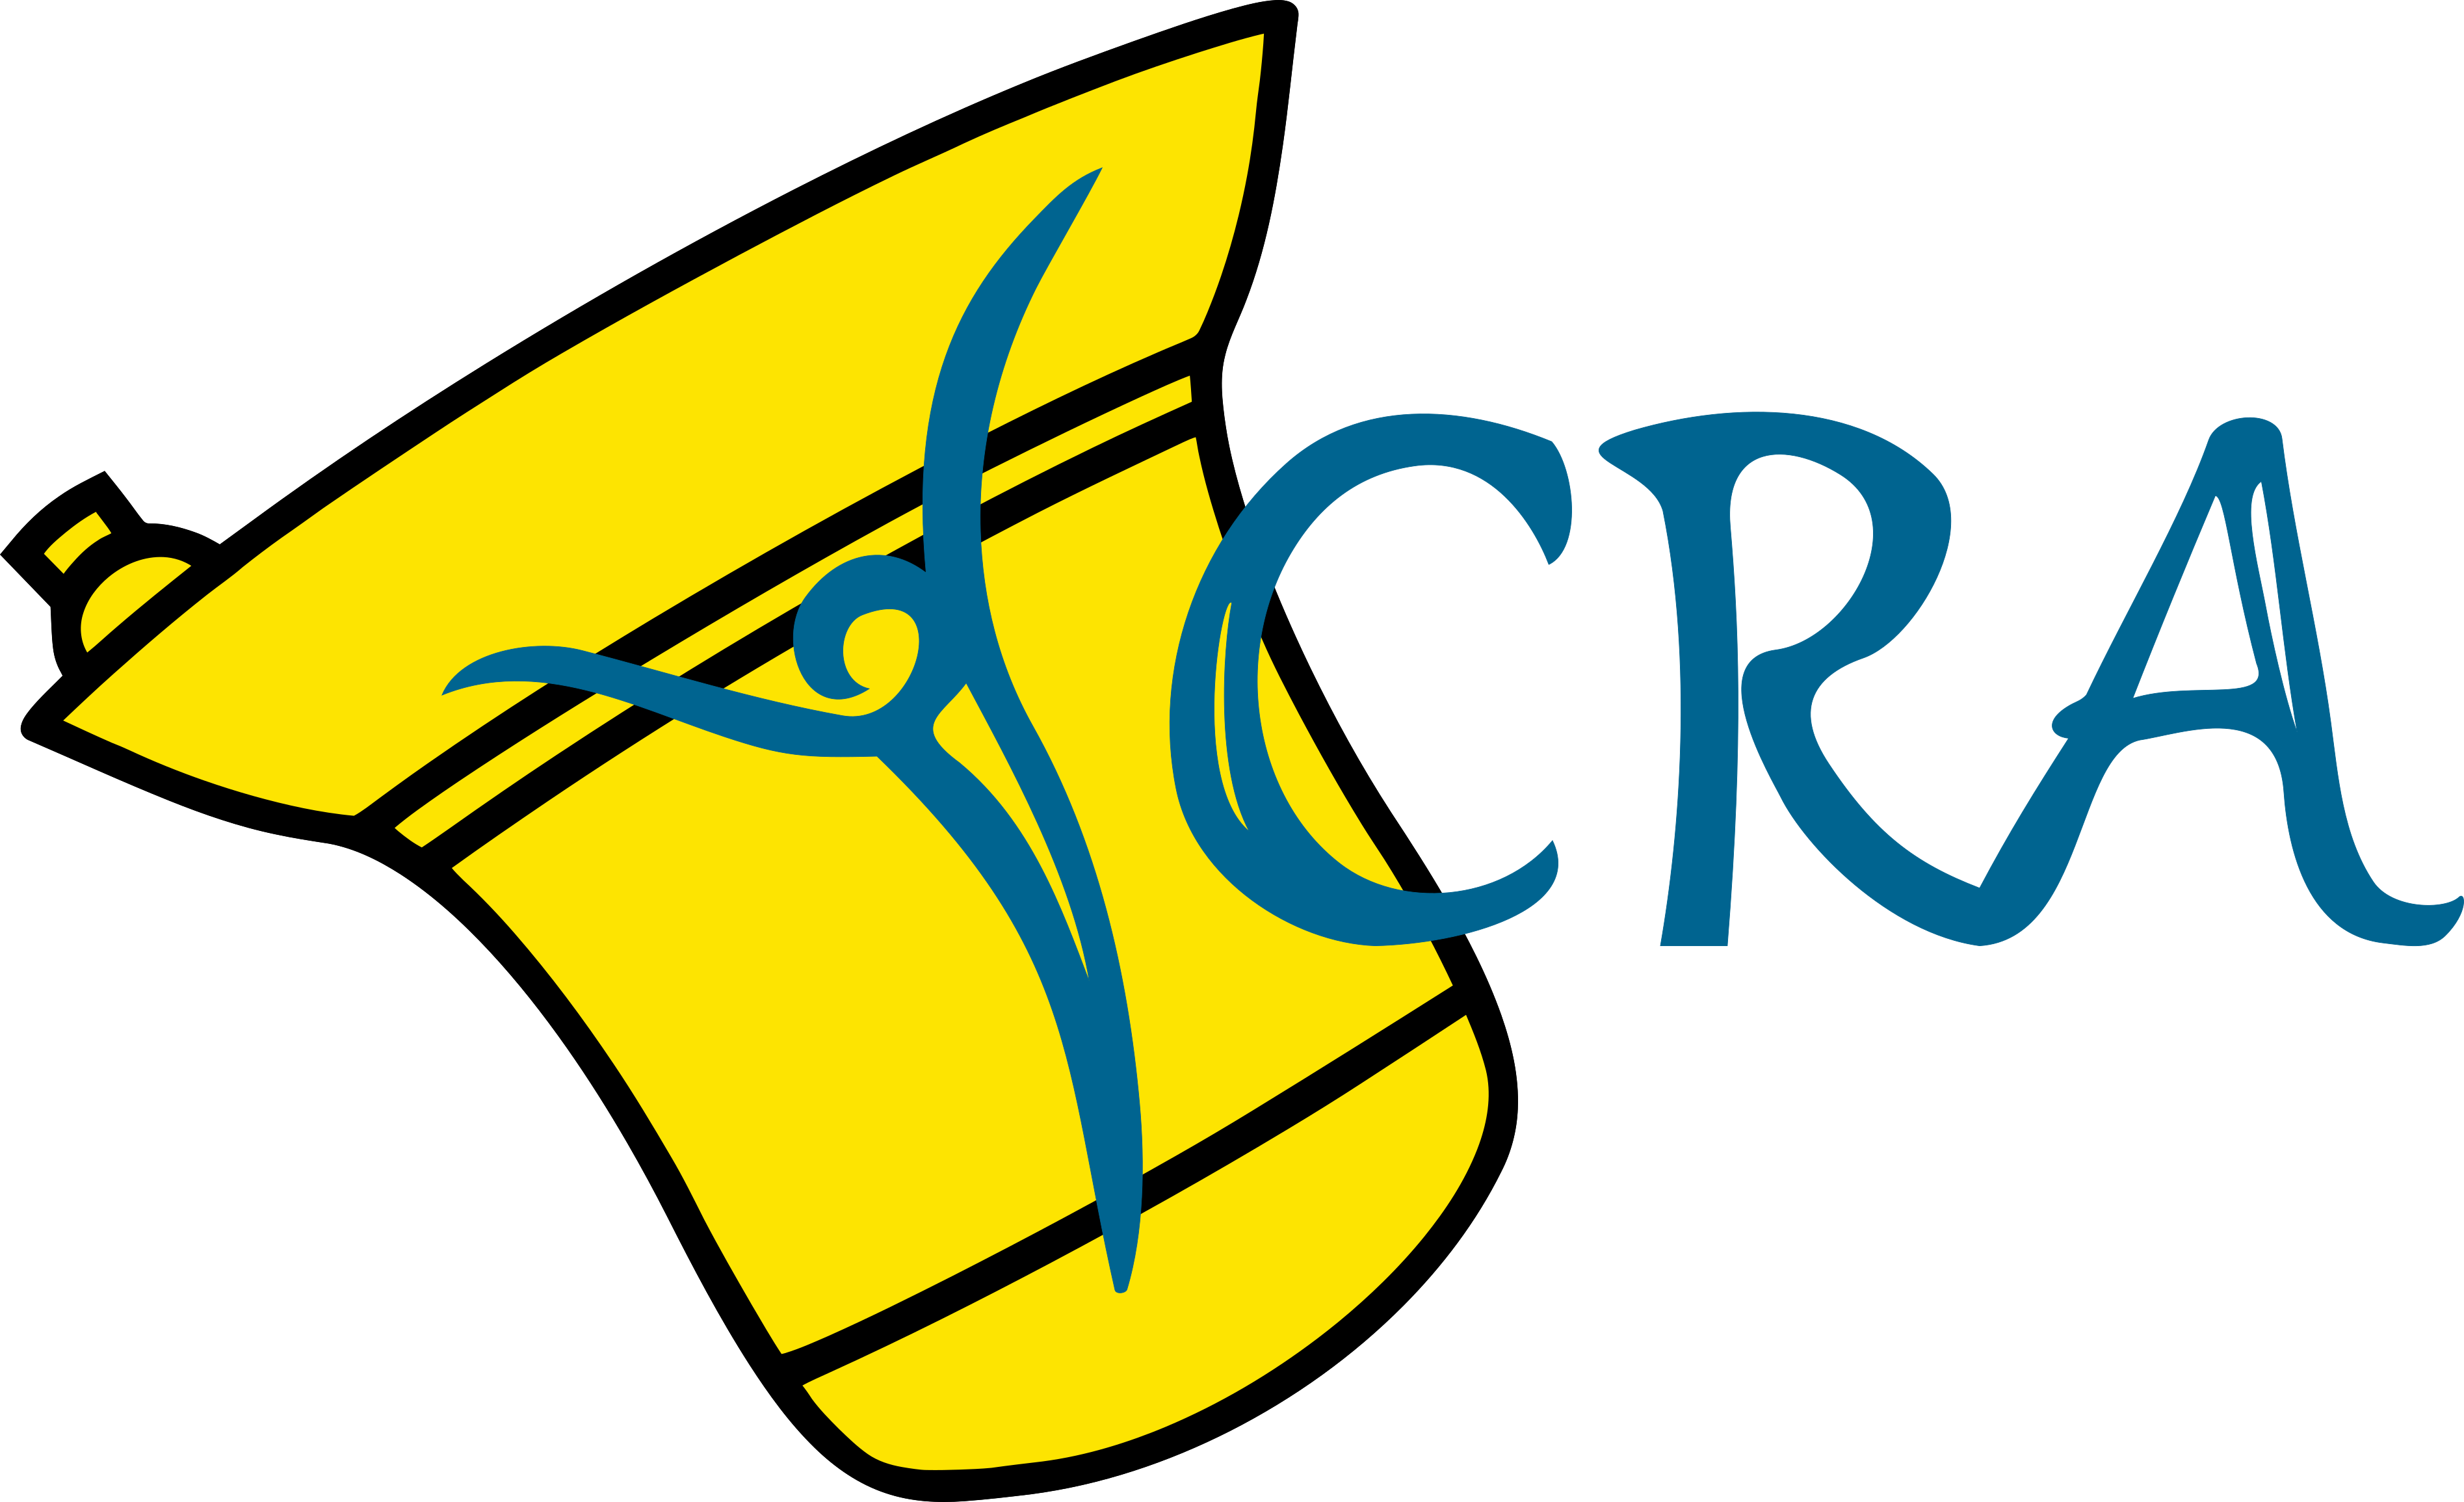 YCRA logo